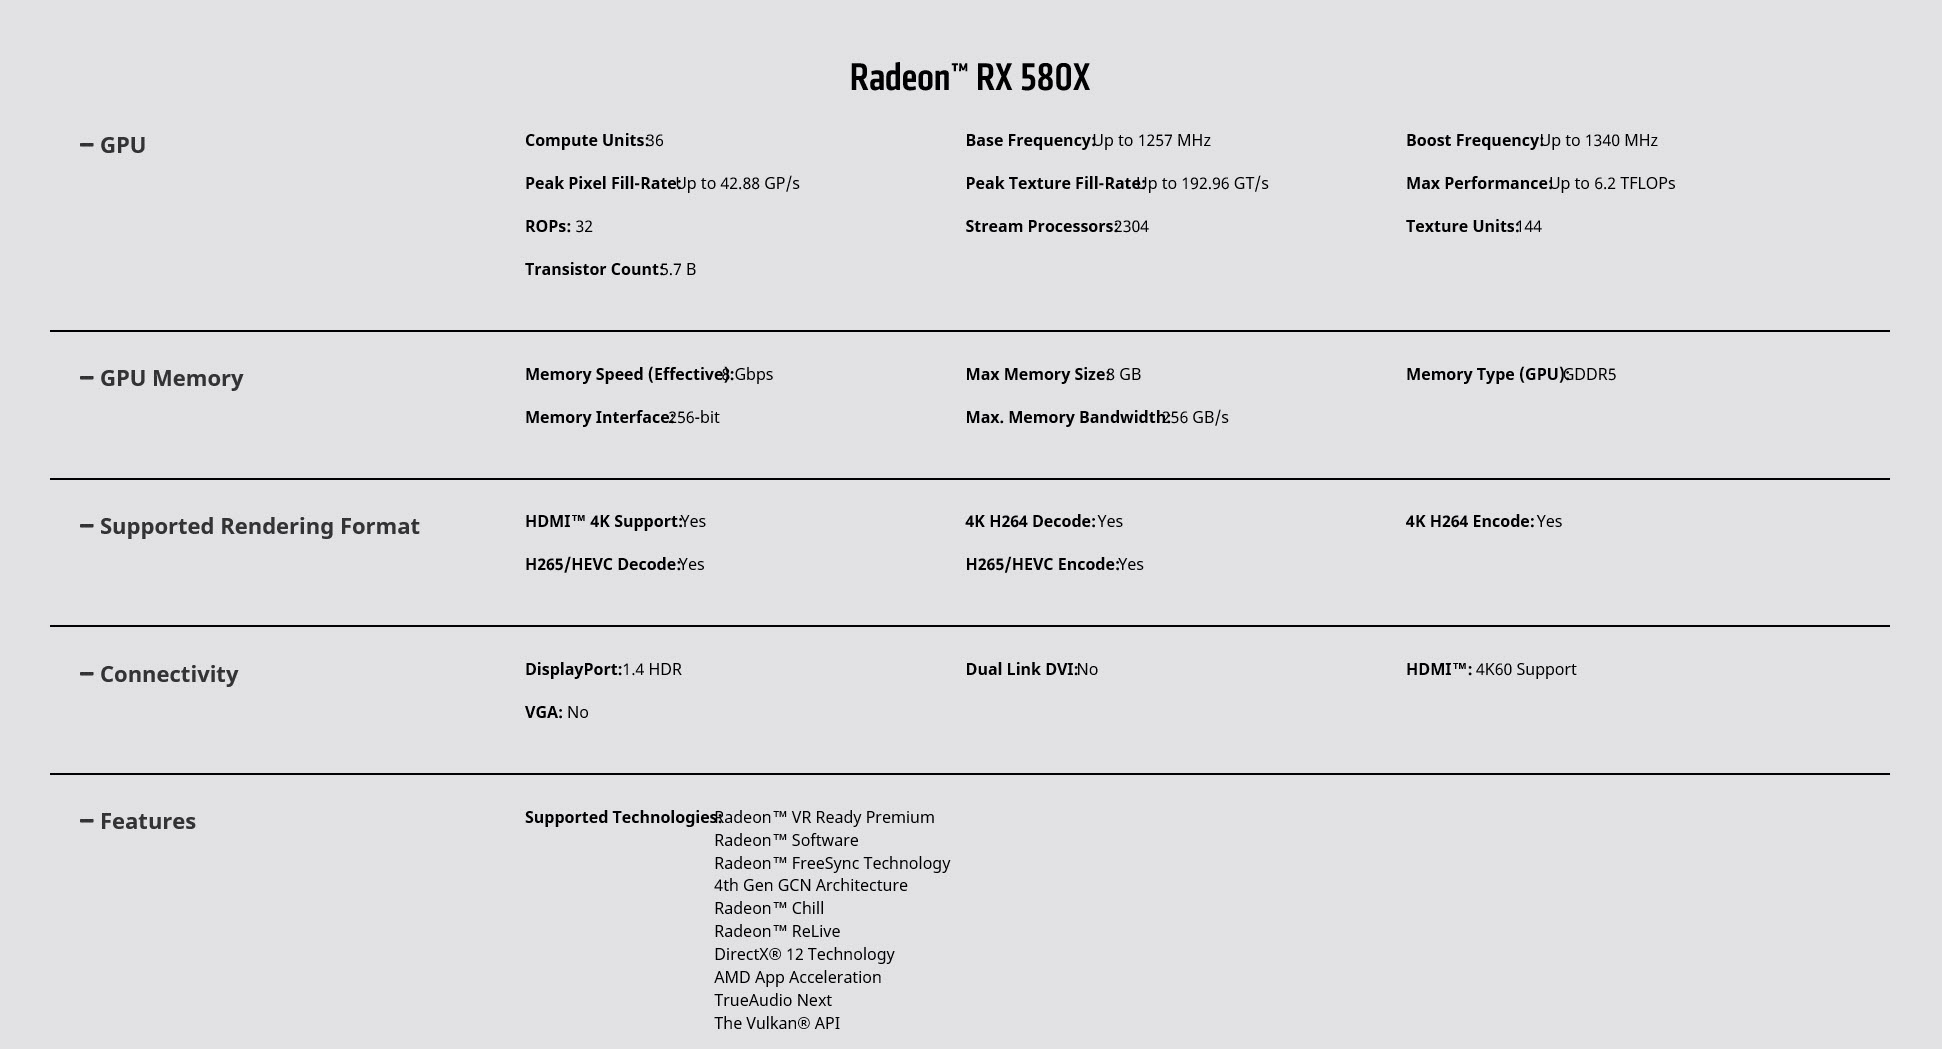 2018 04 12 12 38 01 มาจริง!!เอเอ็มดีเปิดตัว AMD Radeon RX 500X ในซีรี่ย์ X Series โค๊ดเนม Polaris รุ่นใหม่ล่าสุด 5รุ่น 